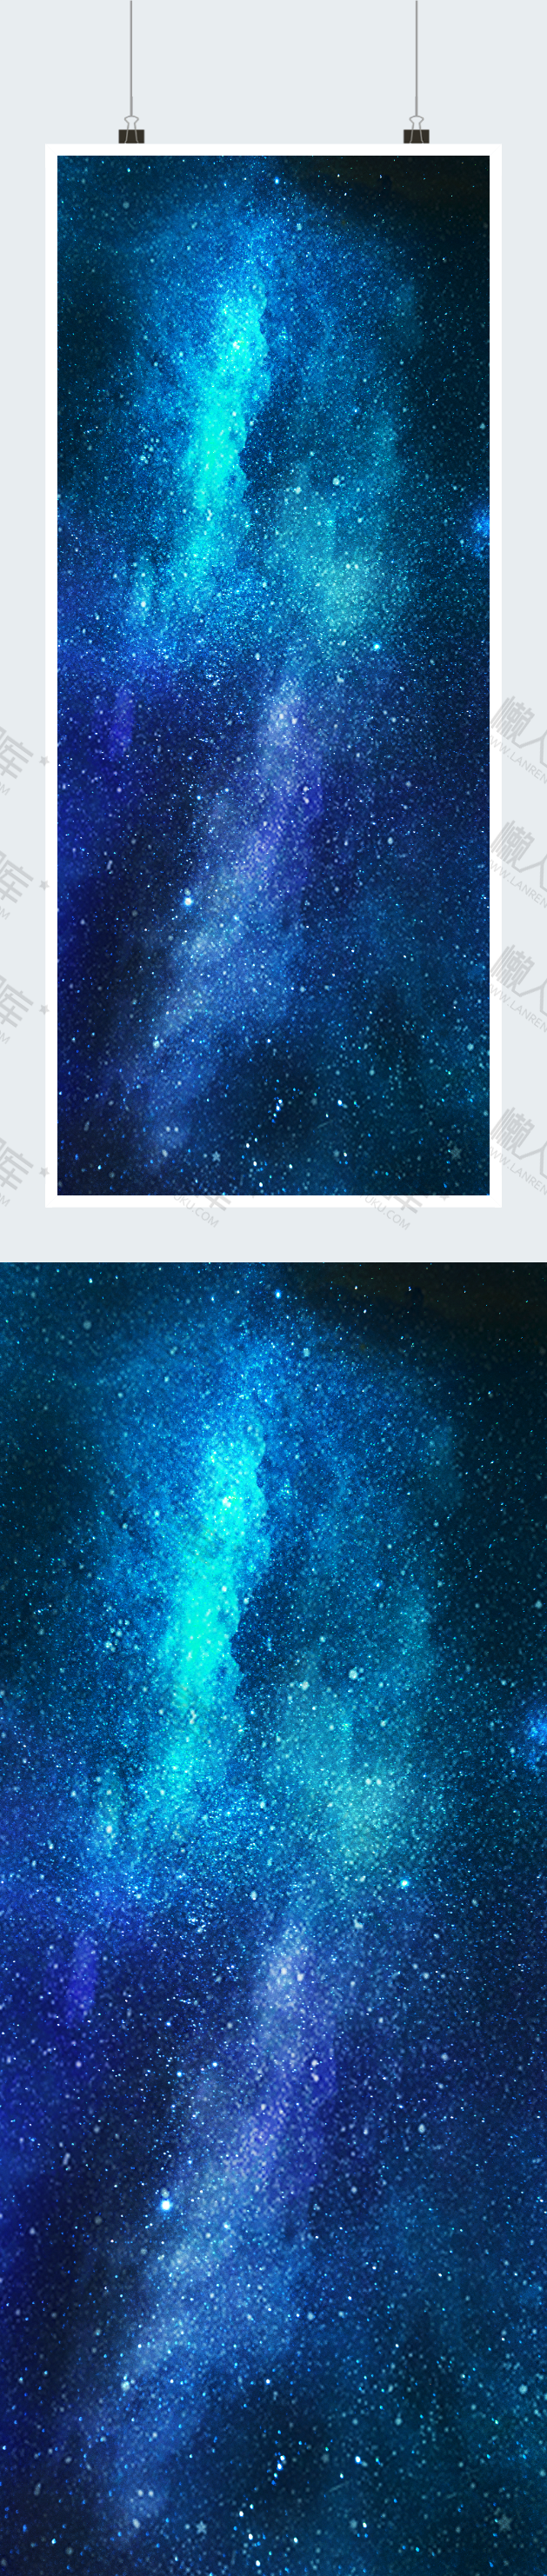 星空银河壁纸图1